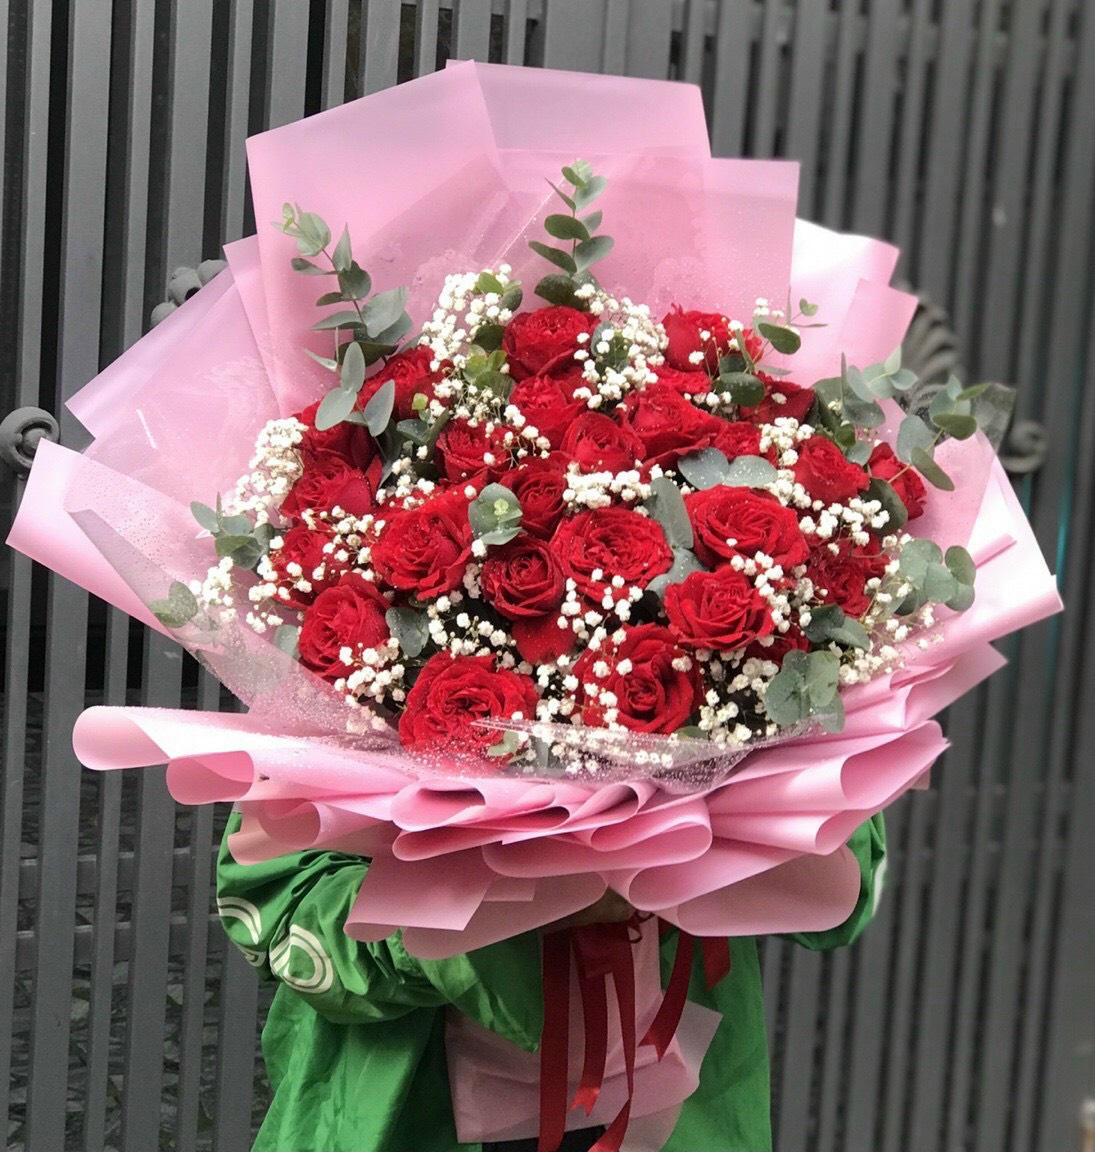 Bó hoa đẹp tại shop hoa tươi Vĩnh Thuận